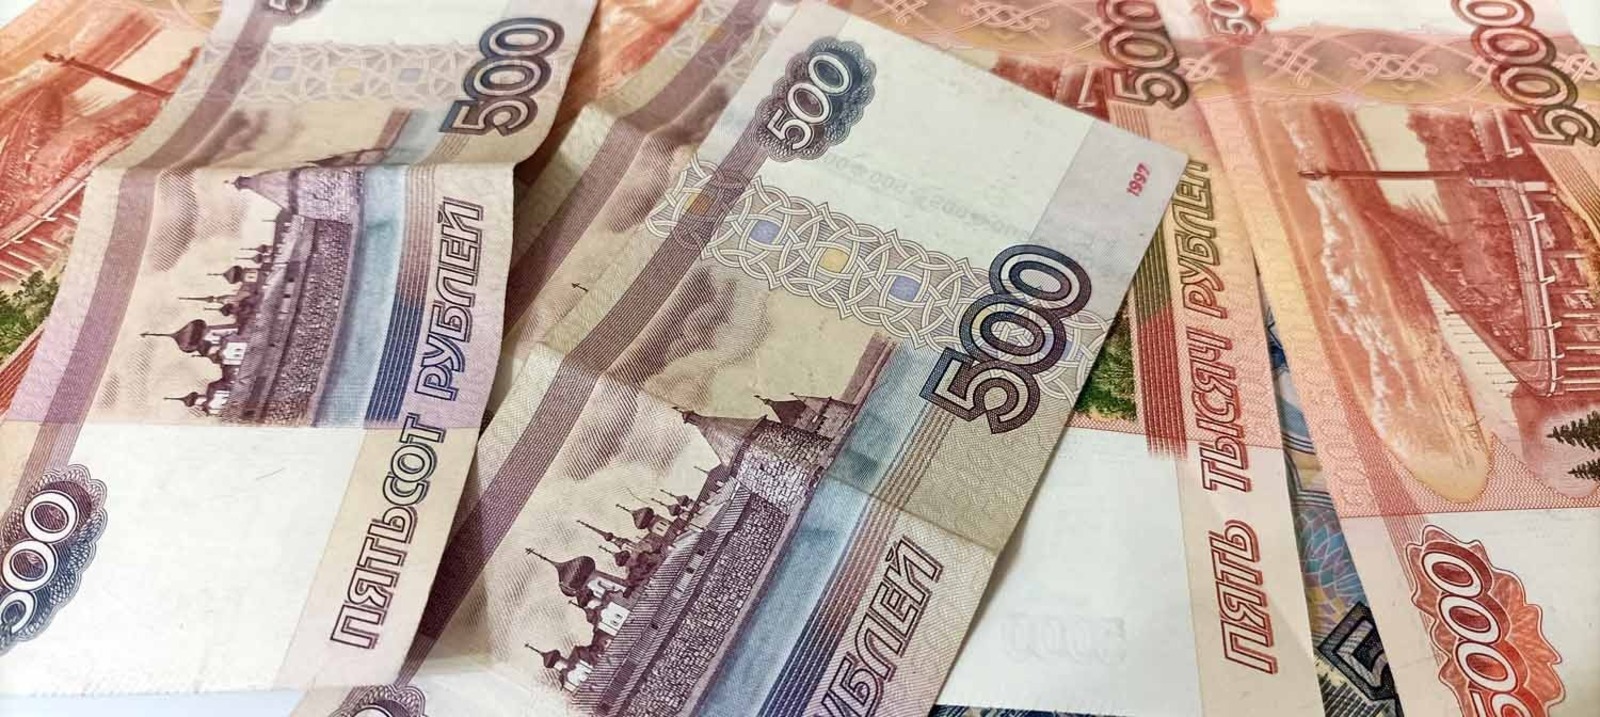 Артур СМОЛОВ  За сутки жители Башкирии перечислили мошенникам более 3 миллионов рублей